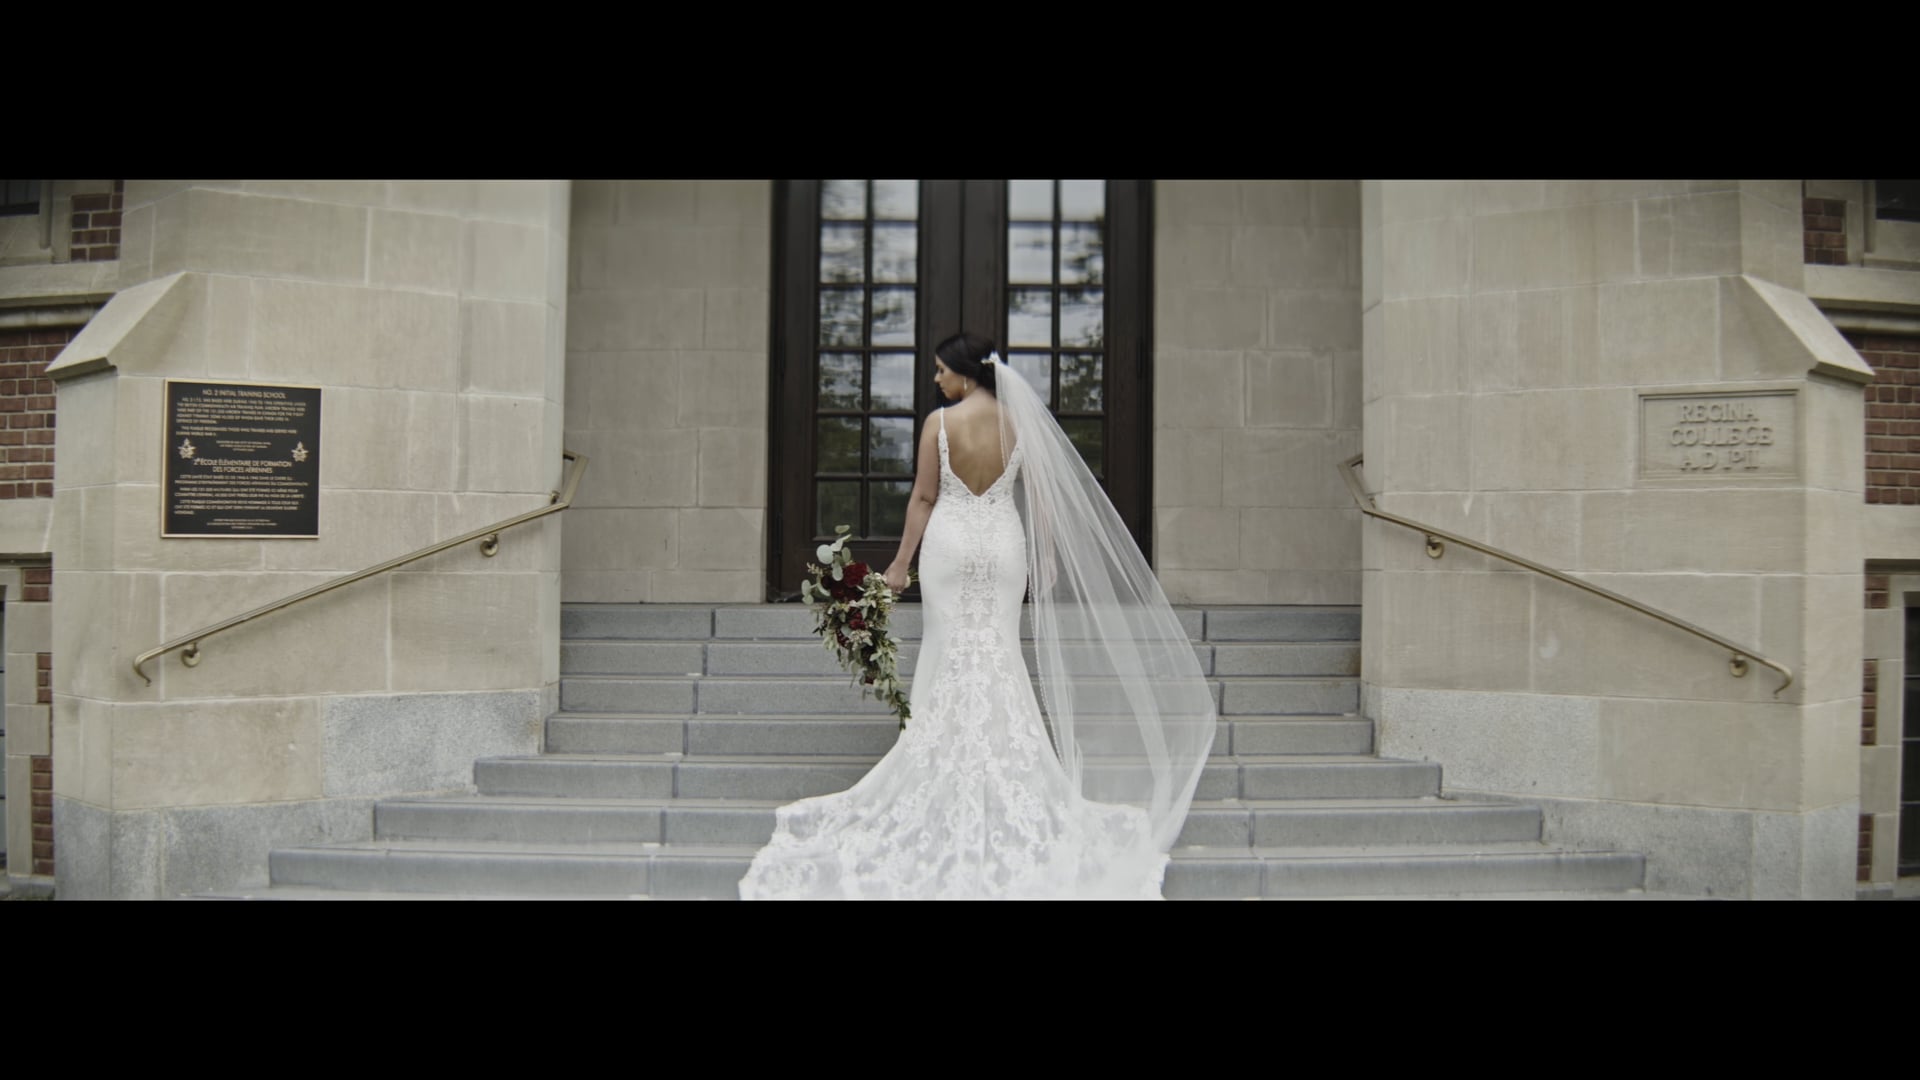 The Novak Wedding | Teaser